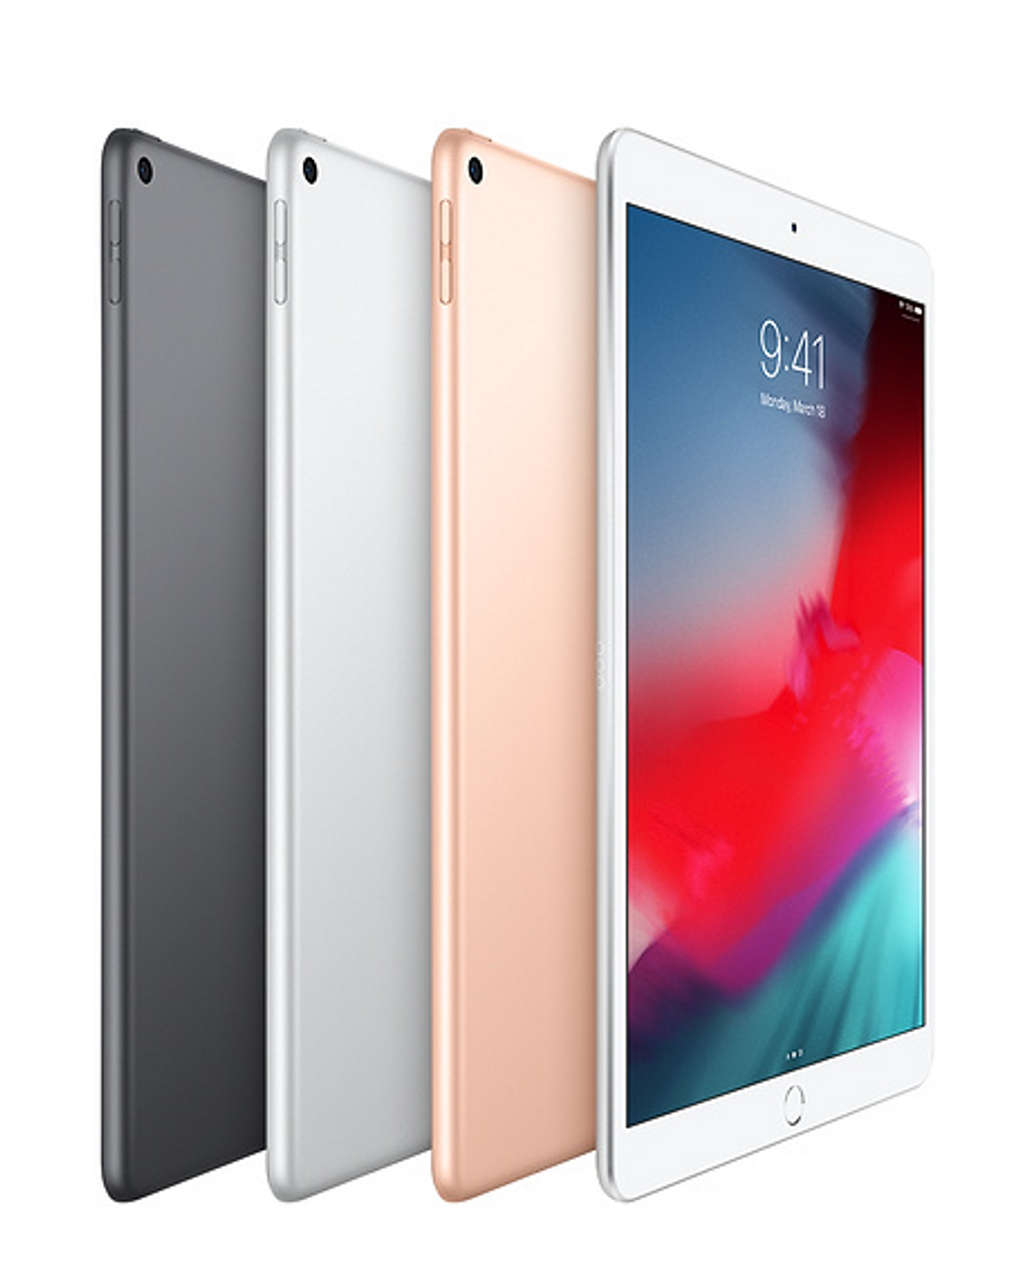 Apple iPad Air 3 (64GB) Wi-Fi + Cellular - Mac Me an Offer